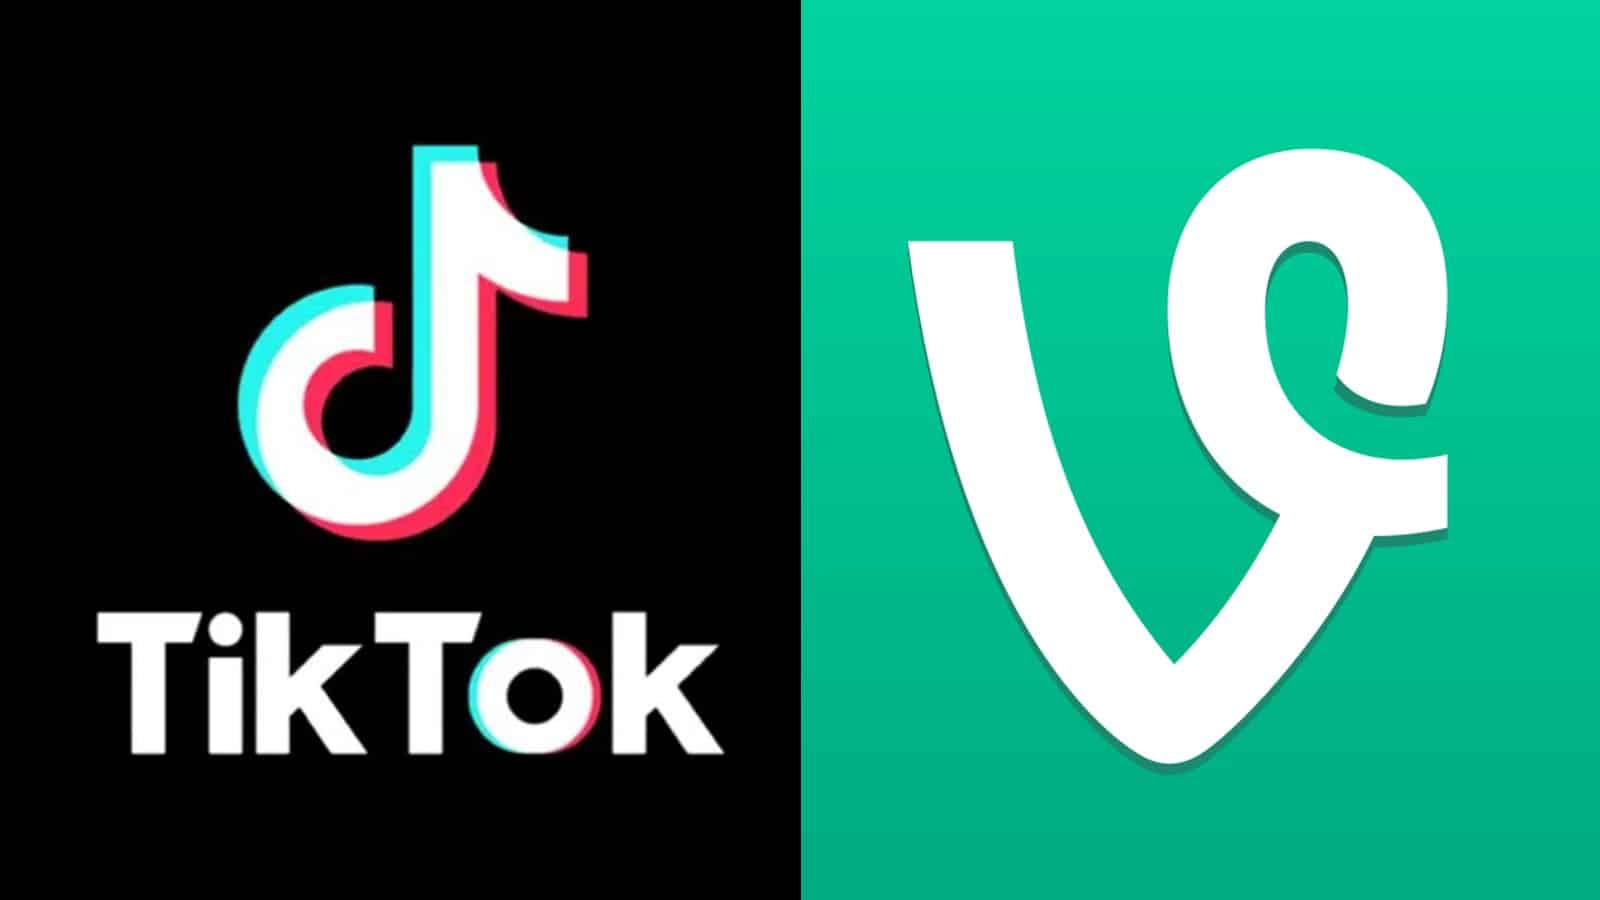 TikTok and Vine logos next to each other